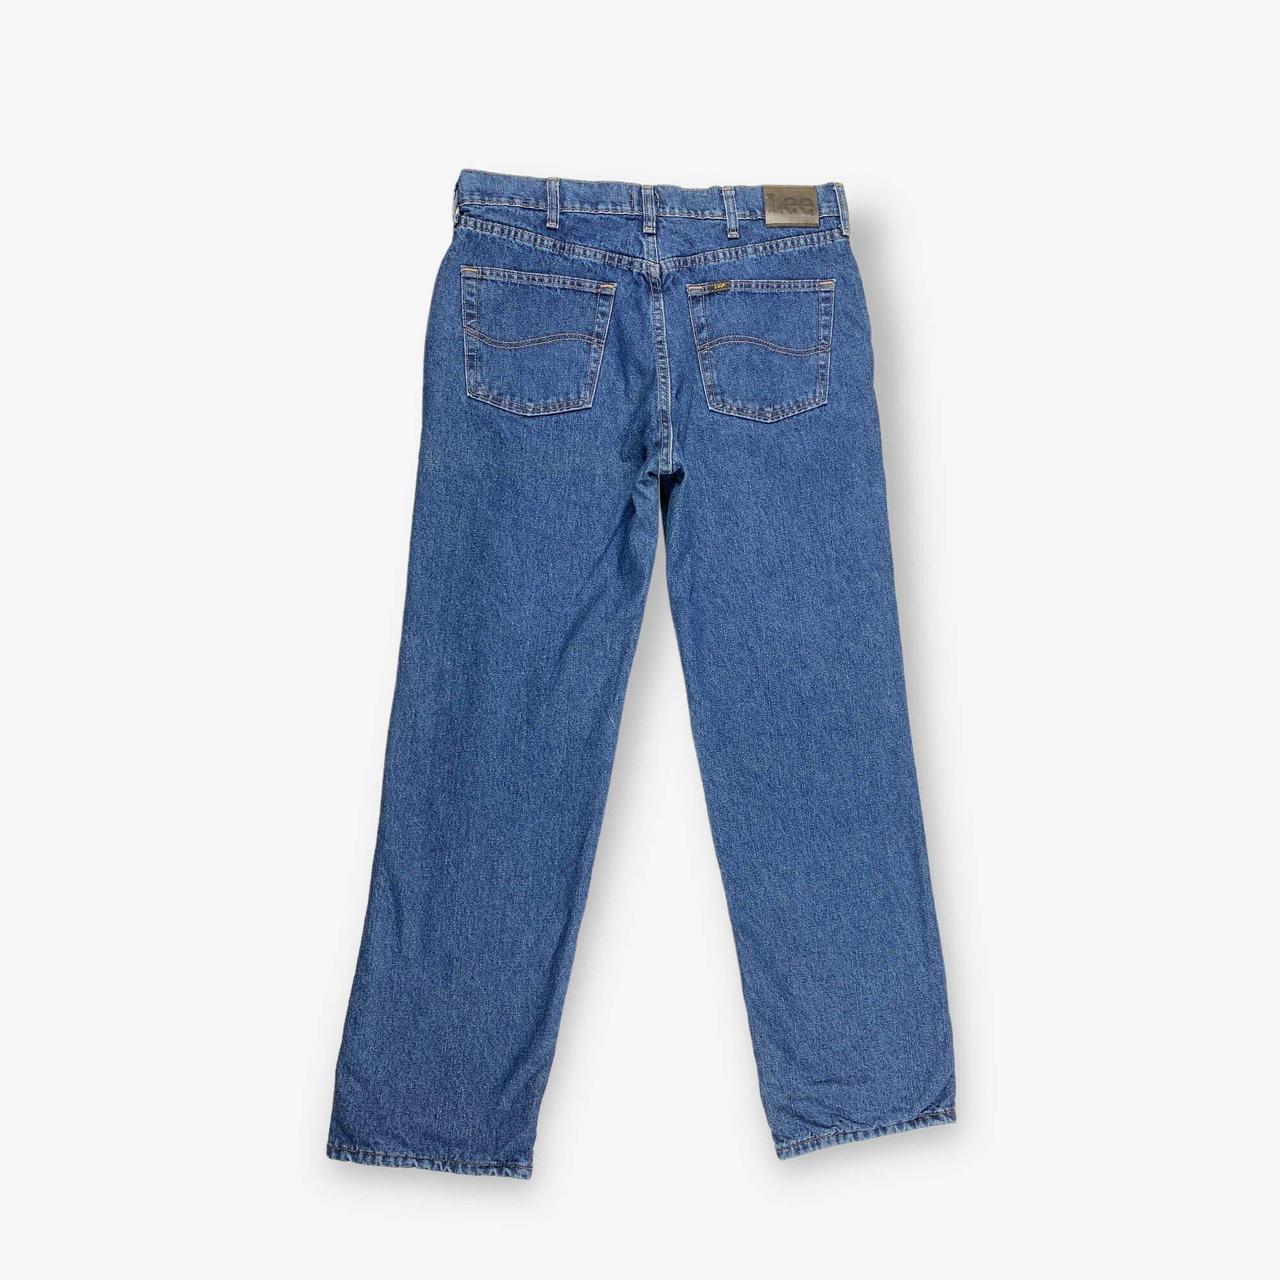 BV17893 Vintage Lee straight leg jeans in dark... - Depop